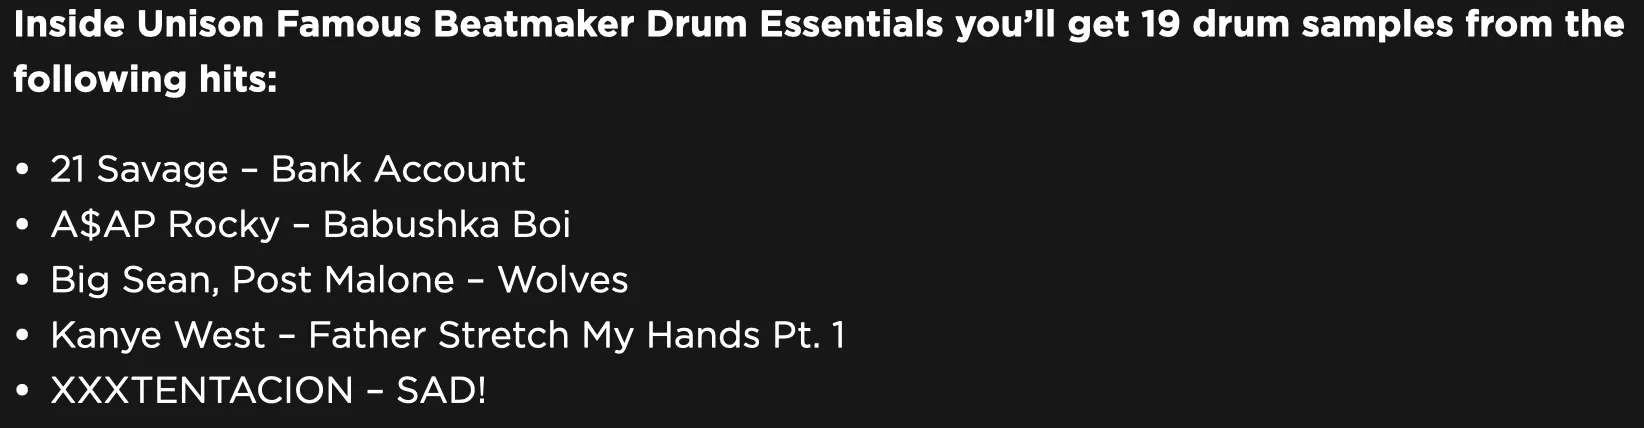 Unison Famous Beatmaker Drum Essentials Specs - Unison